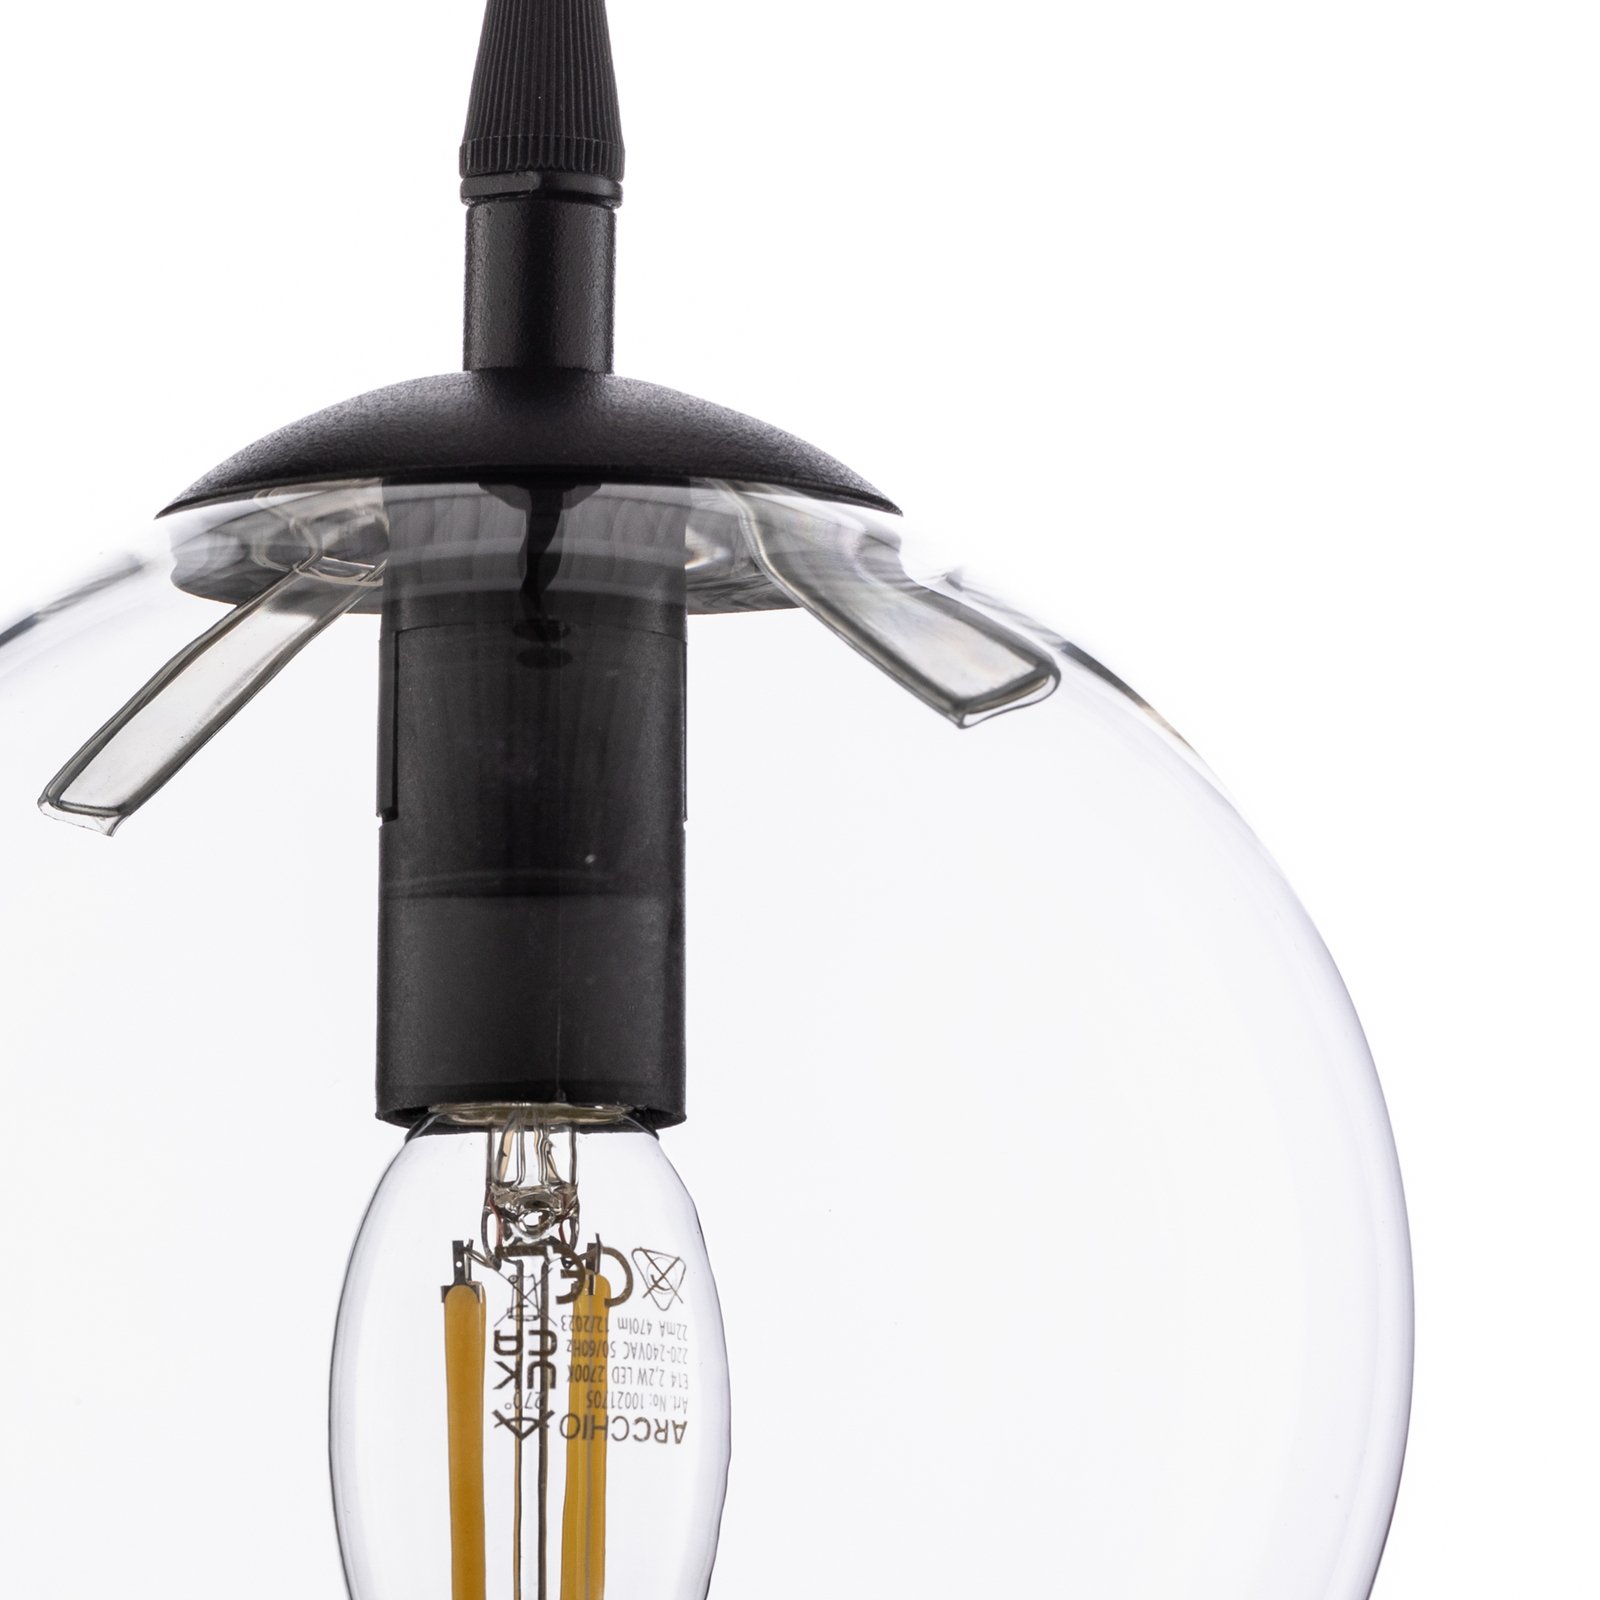 Glassy hanglamp, zwart, helder, glas, Ø 14 cm, E14